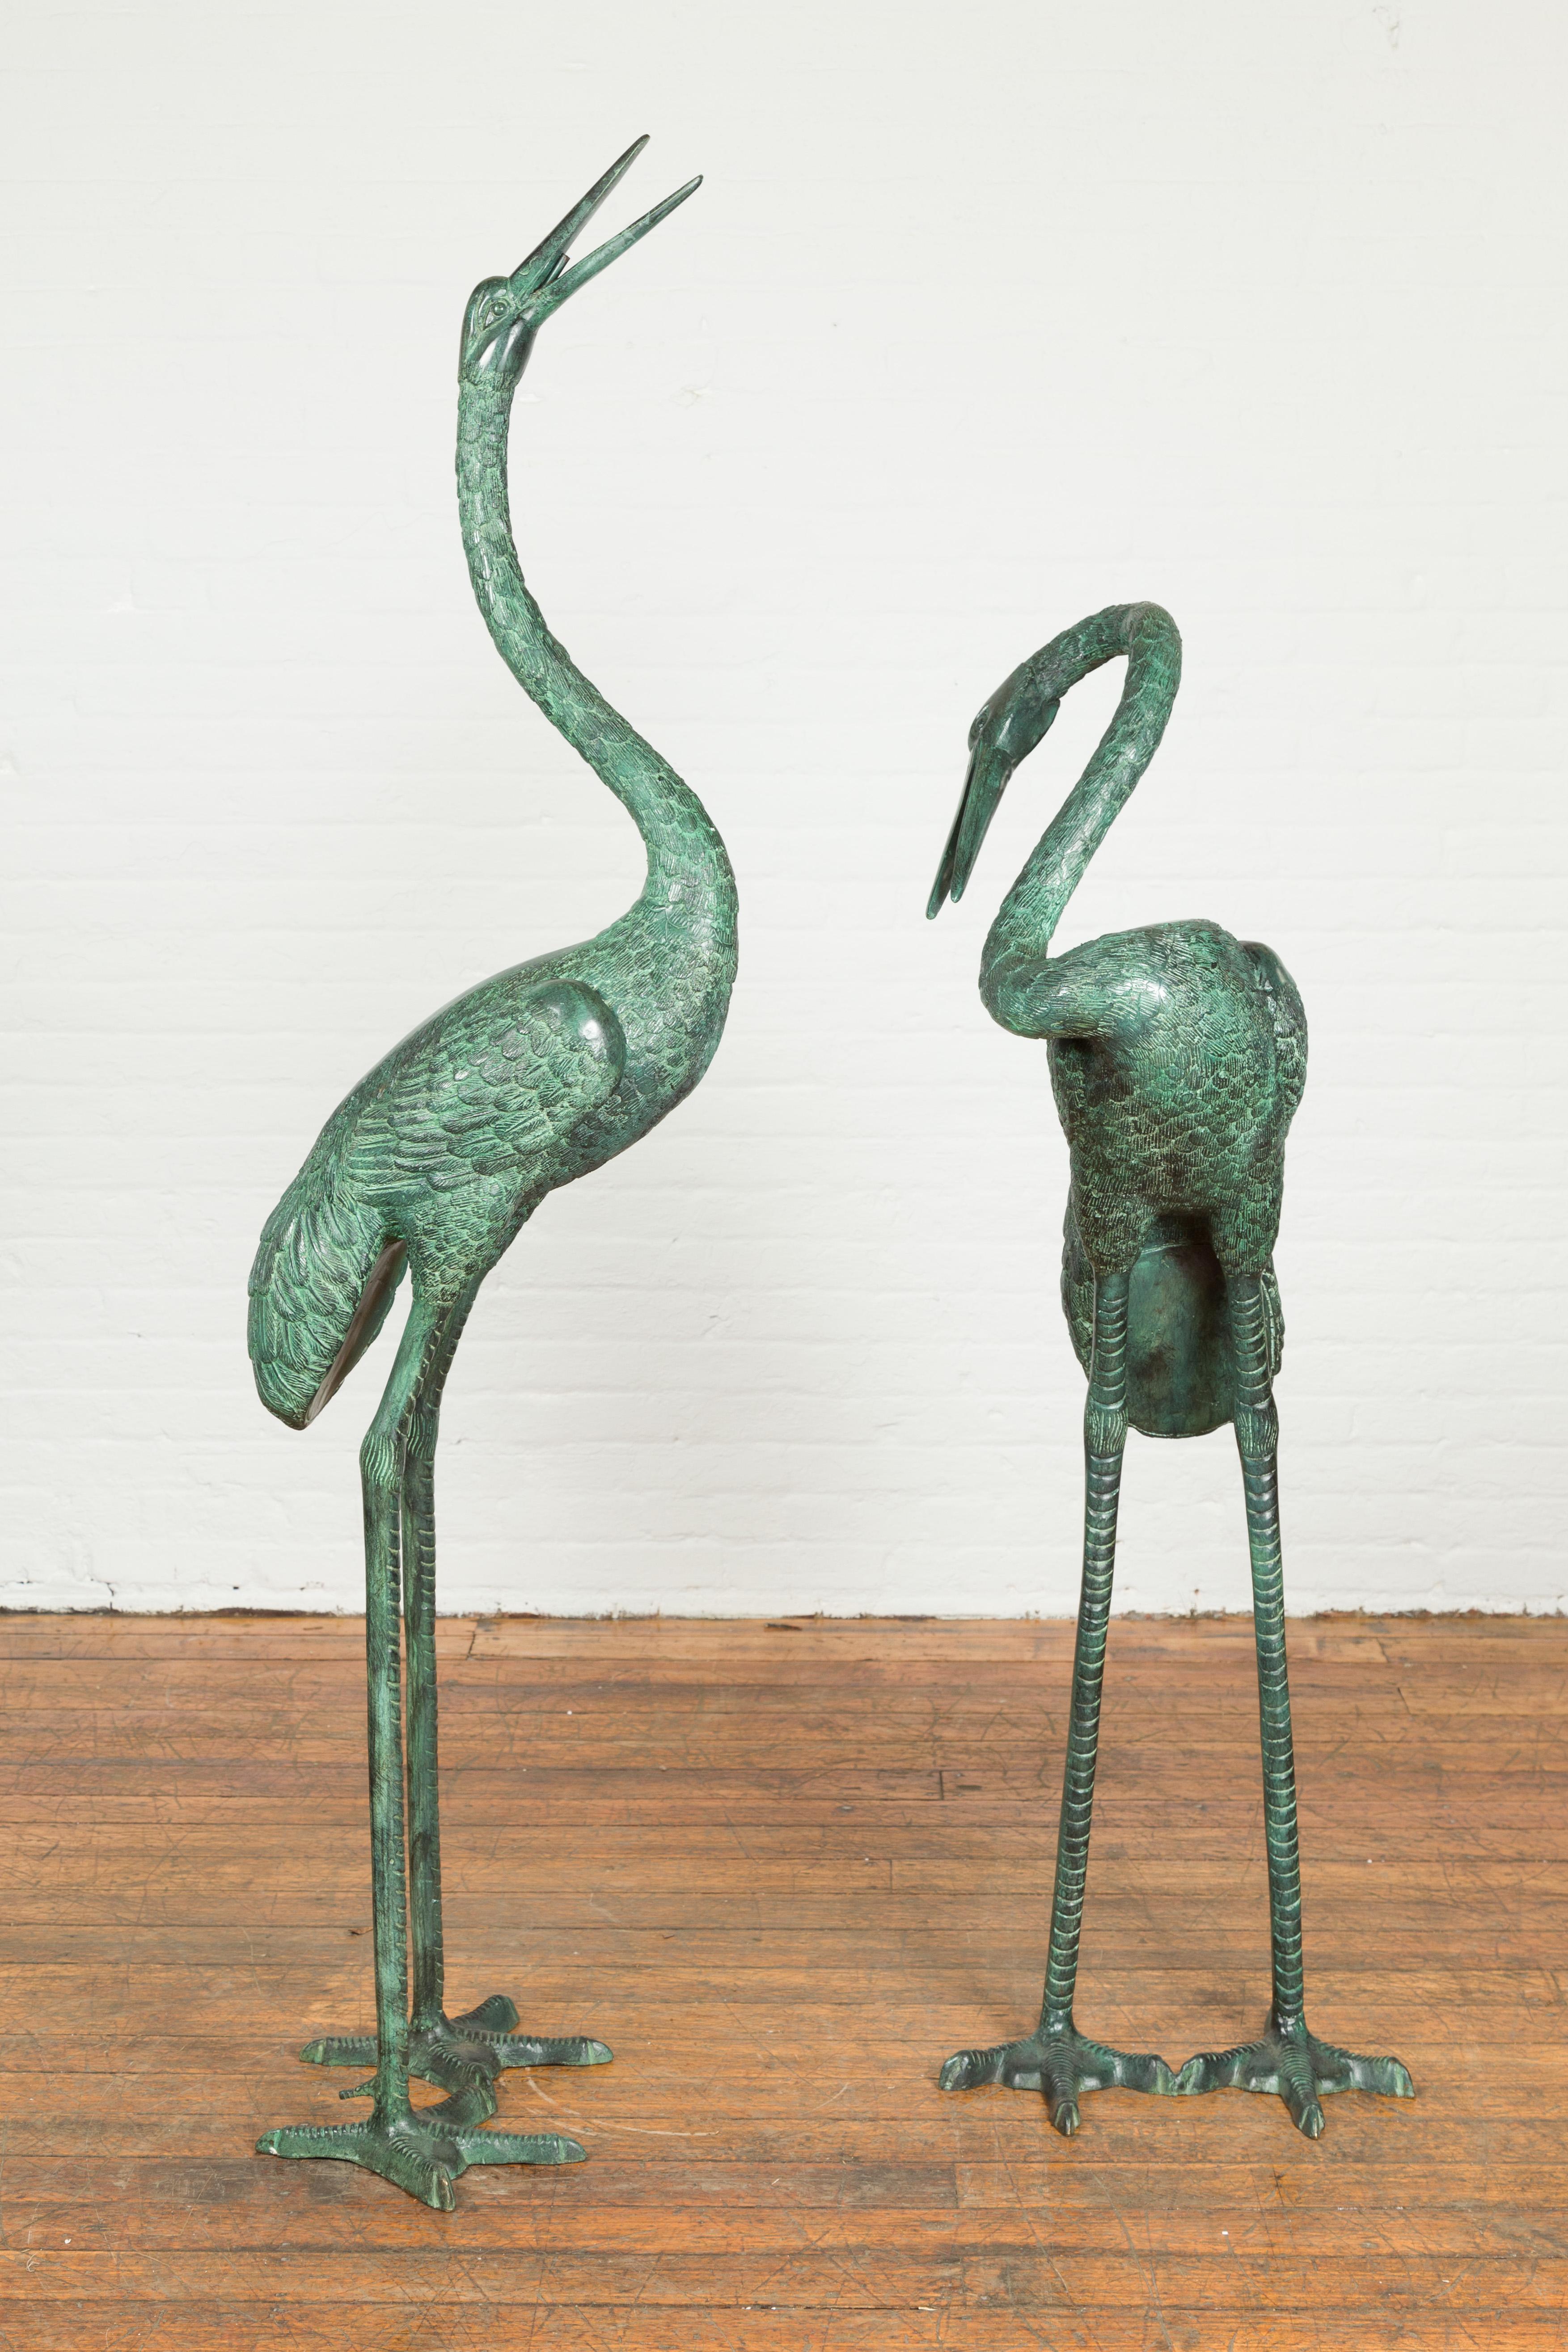 Une paire de sculptures de grues en bronze à la cire perdue, faites sur mesure, avec patine vert-de-gris, tubées en tant que fontaines. Réalisé avec la technique traditionnelle de la cire perdue qui permet une grande précision et finesse dans les